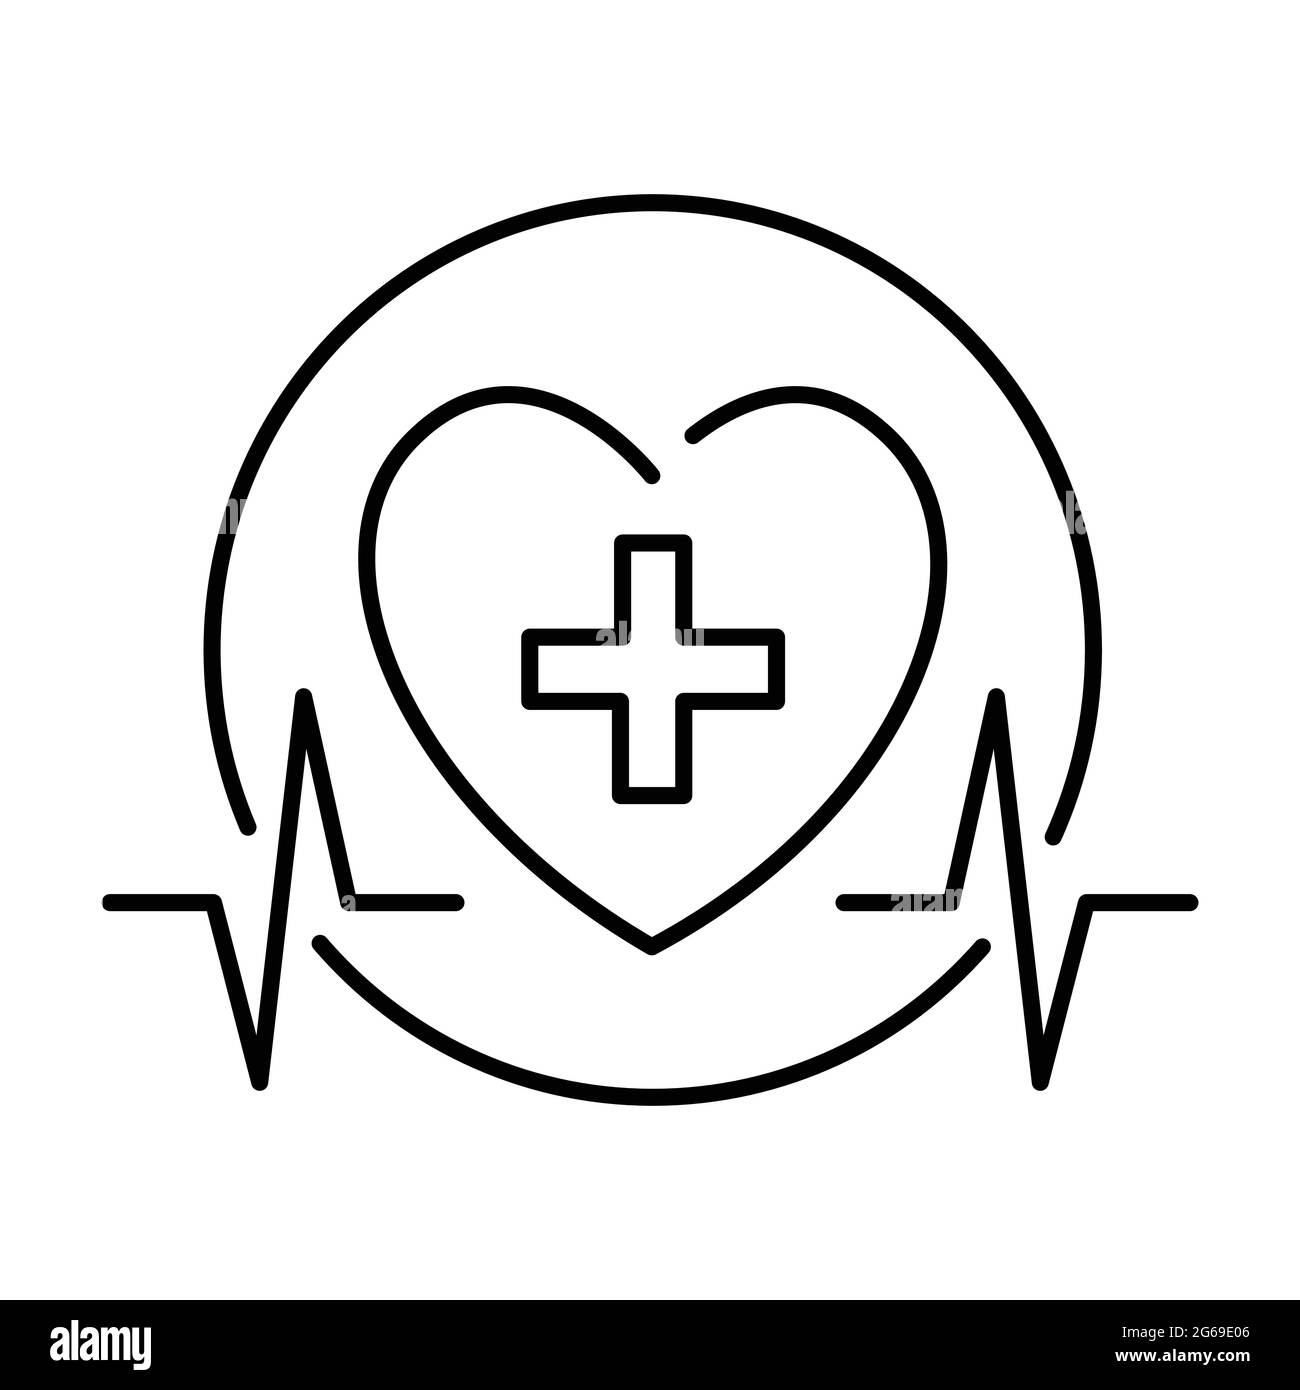 Buena salud logo Imágenes de stock en blanco y negro - Alamy